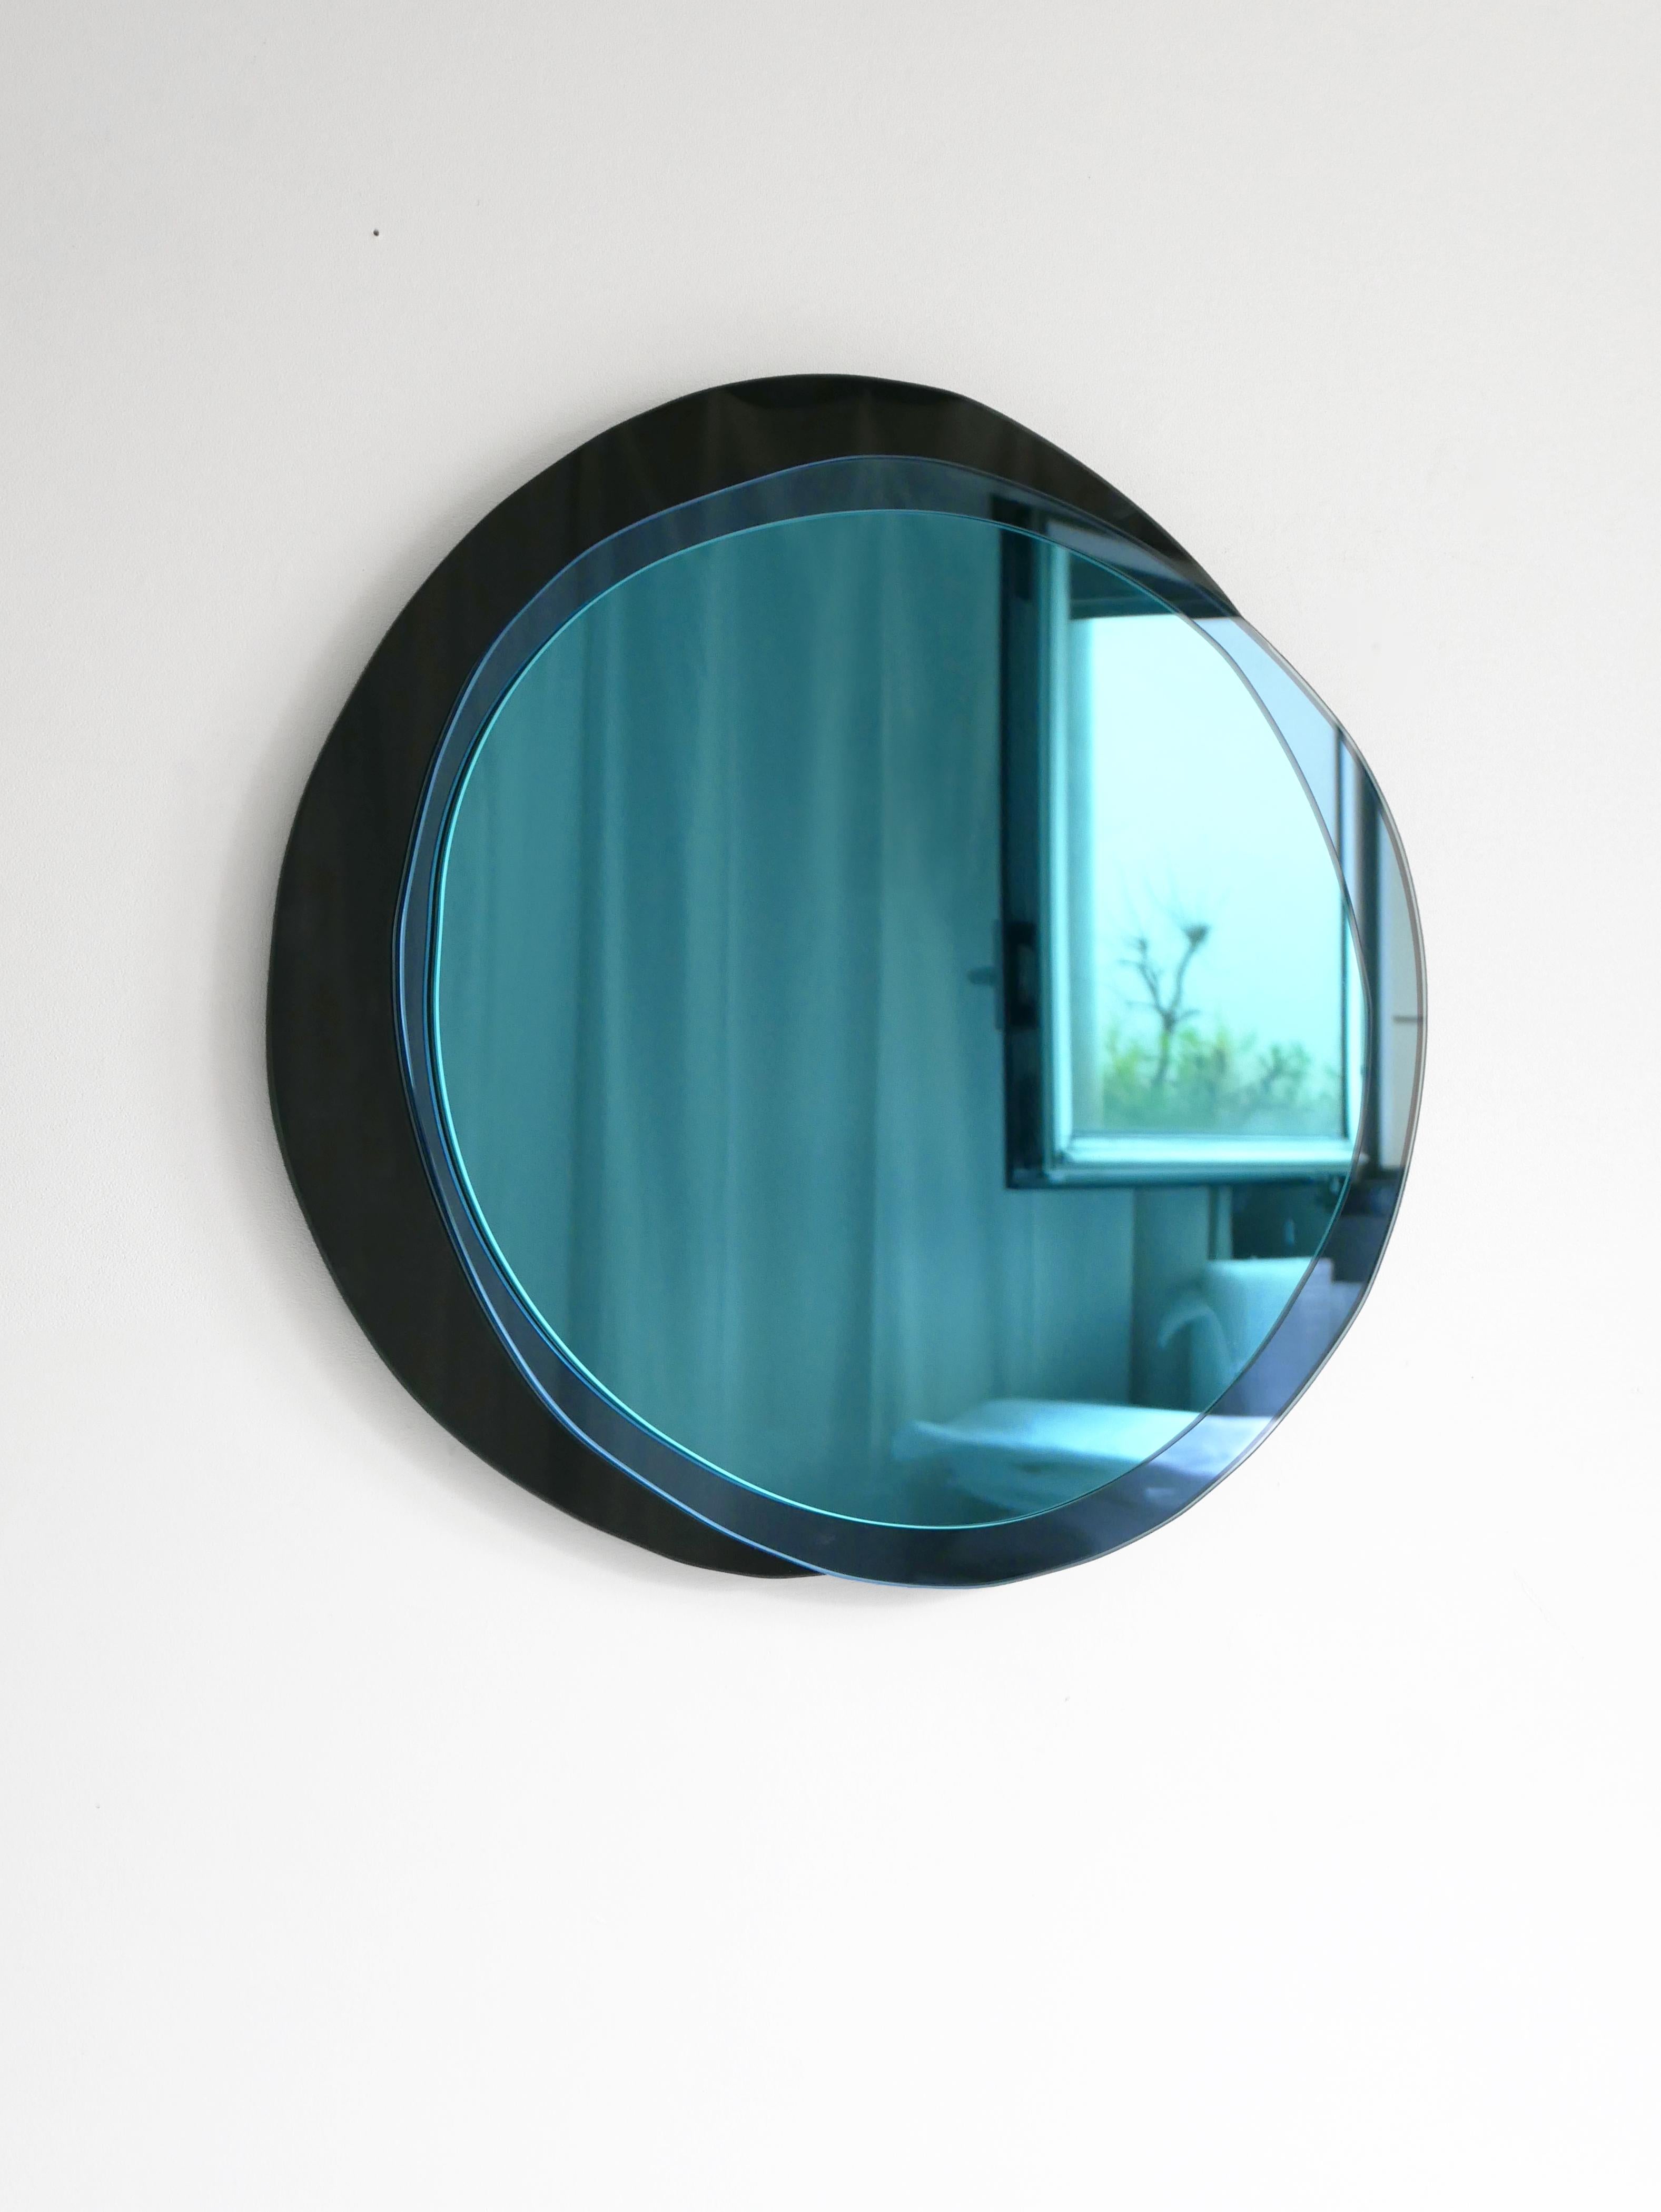 Lunar medium handgeformter Spiegel, Laurene Guarneri
Limitierte Ausgabe.
Handgefertigt.
MATERIALIEN: Himmelblau gefärbter Spiegel, dunkelblau gefärbter Spiegel, dunkel gefärbter Spiegel.
Abmessungen: 65 x 65 cm

Laurène Guarneri ist eine in Paris